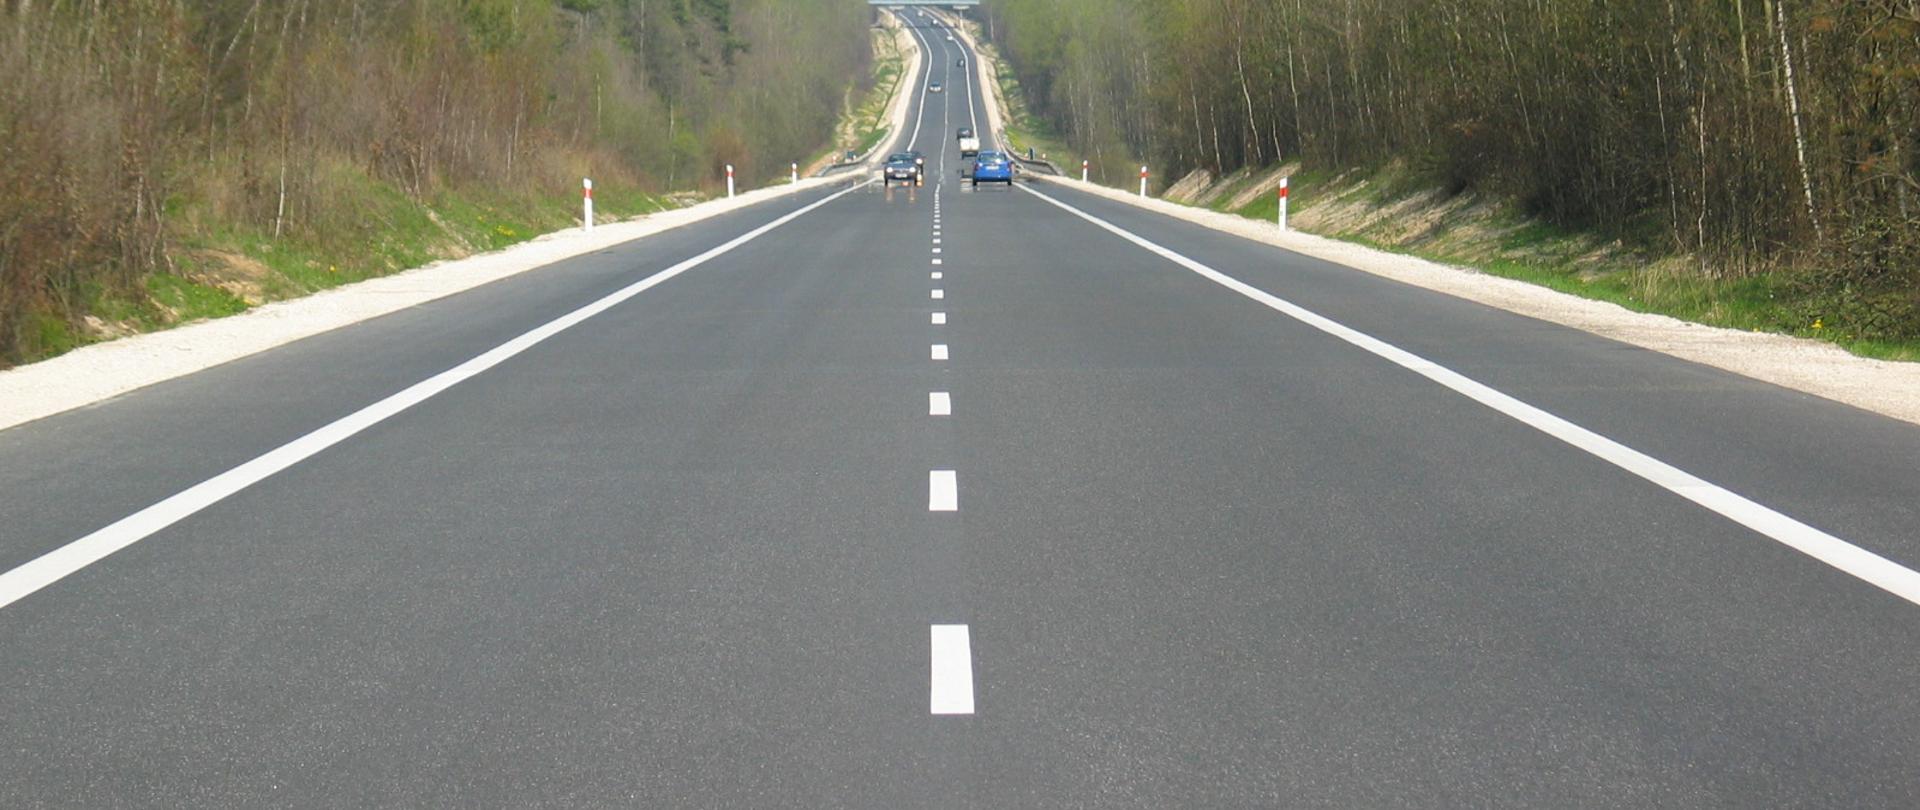 Jednojezdniowa droga asfaltowa z wyraźnym białym oznakowaniem poziomym biegnąca przez las. W oddali jadące samochody.